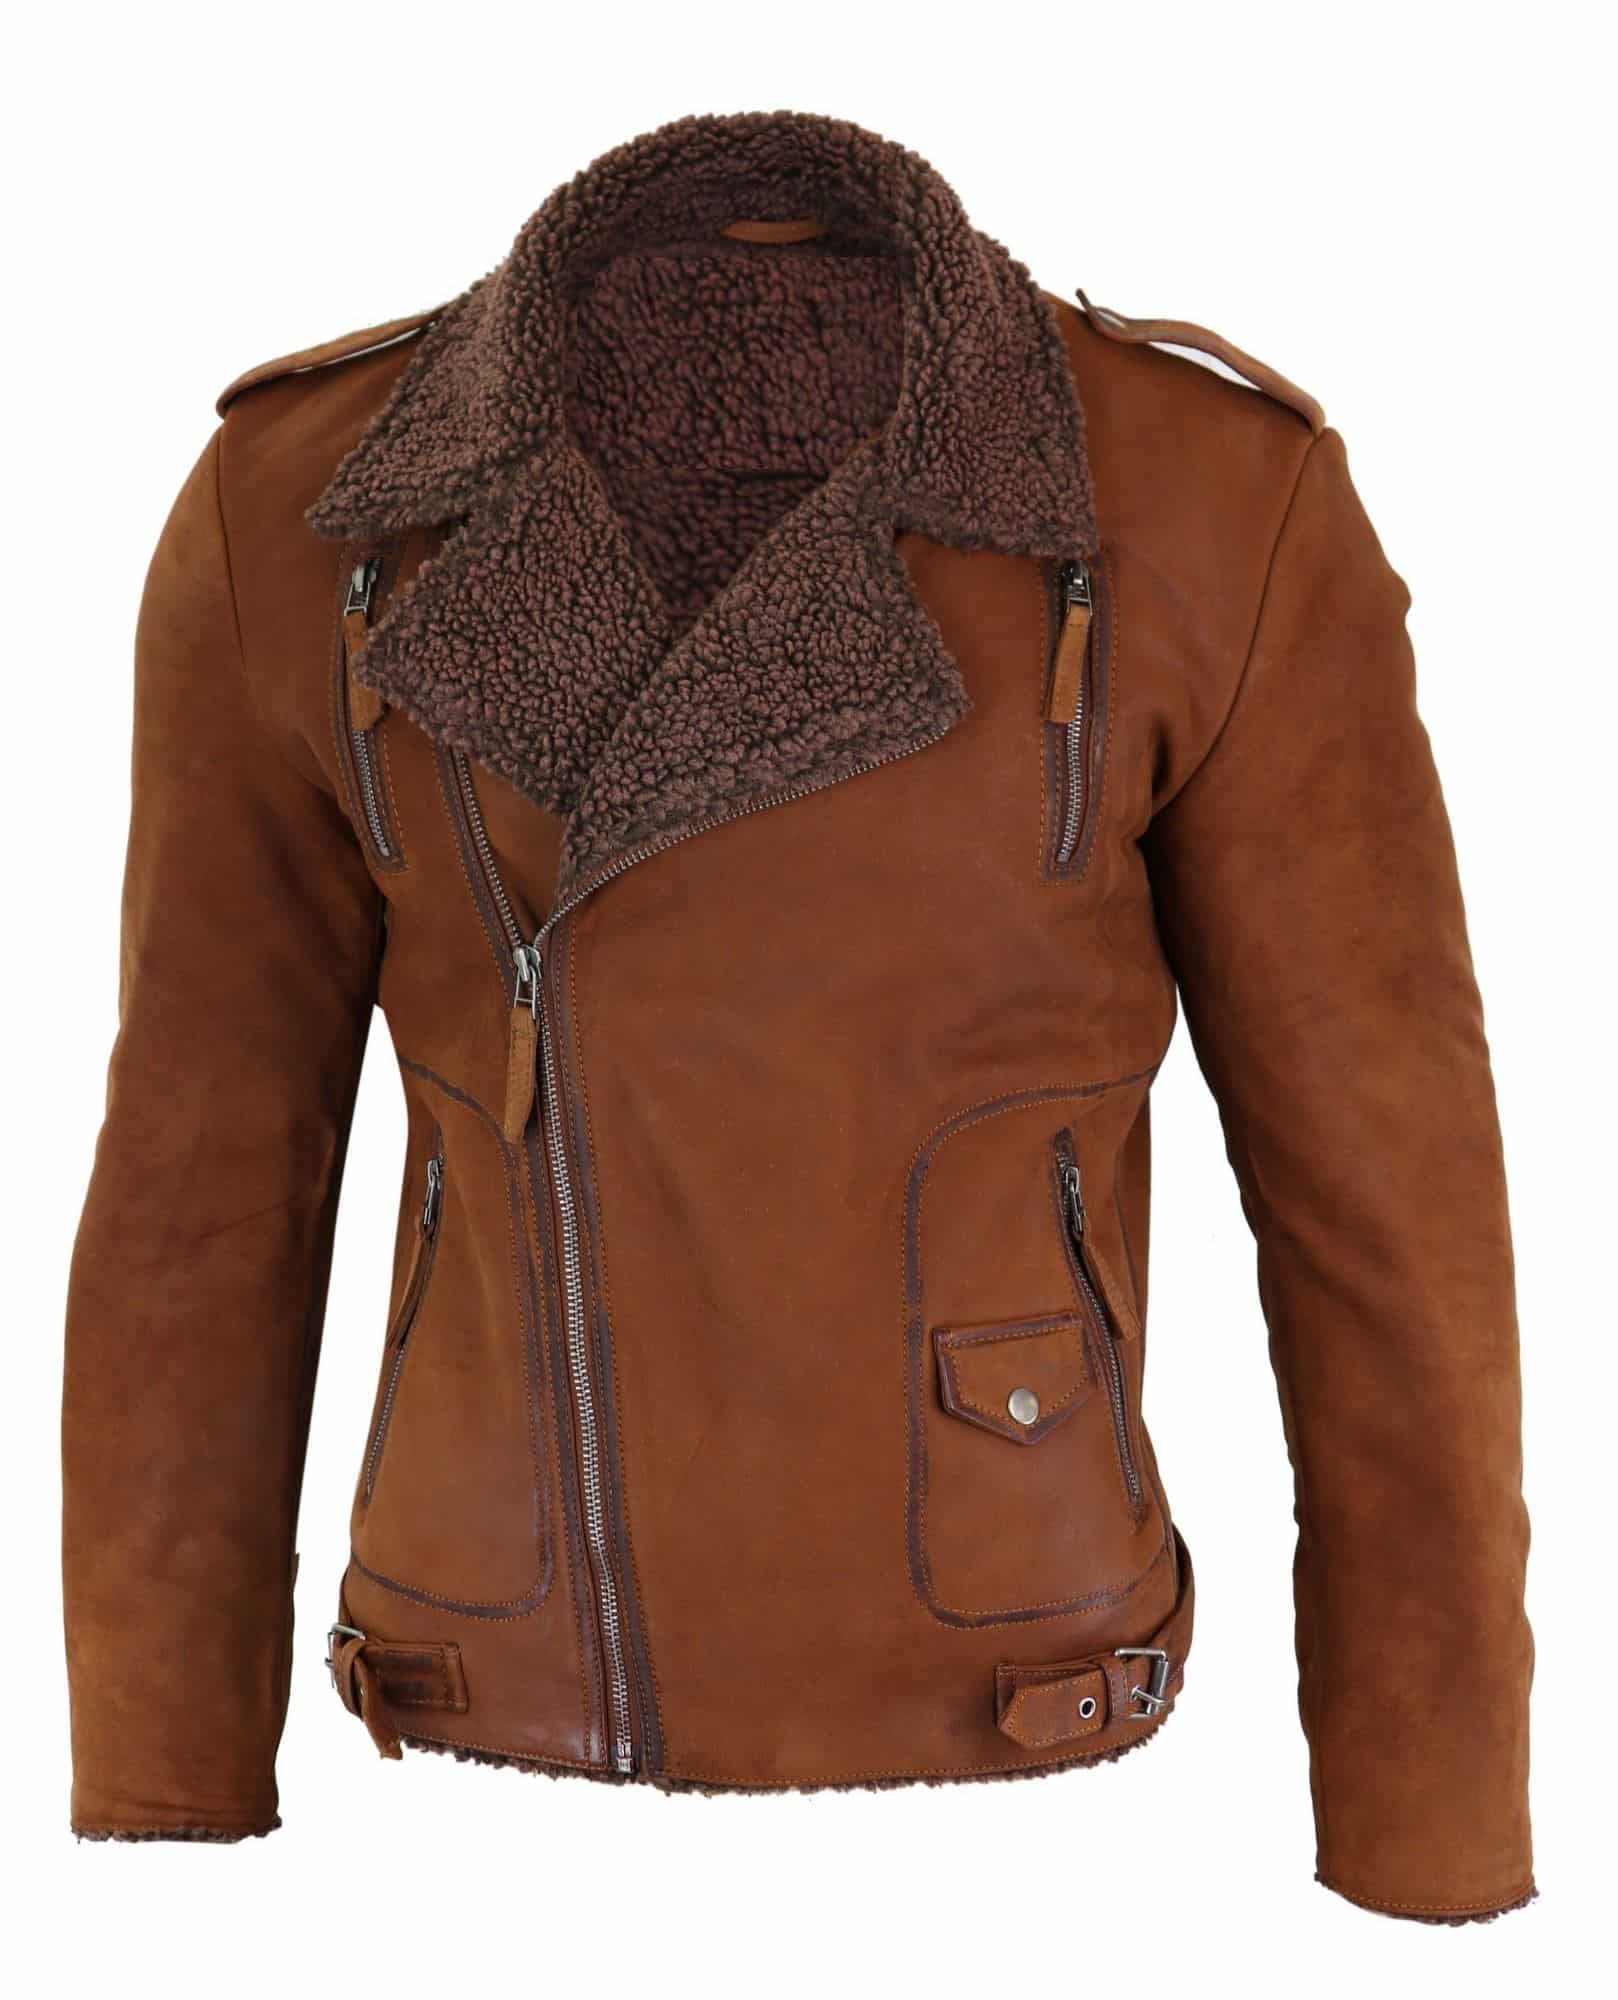 Real Leather Men's Cross-Zip Biker Jacket, Fleece Lined-Tan: Buy Online -  Happy Gentleman United States